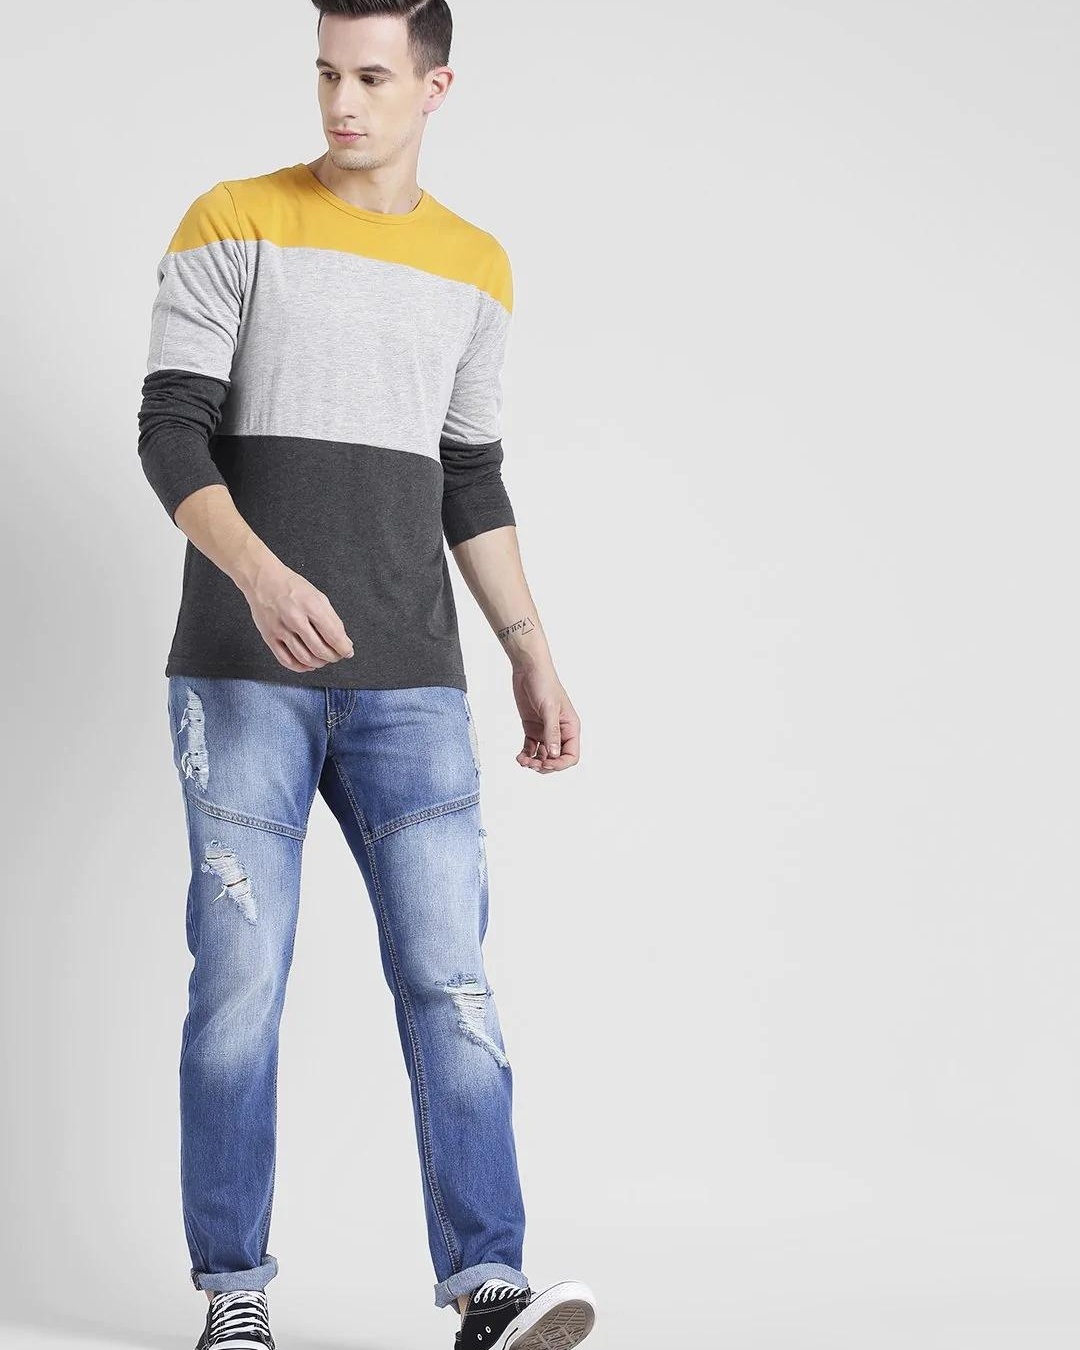 Buy Men's Yellow & Grey Color Block Slim Fit T-shirt Online at Bewakoof